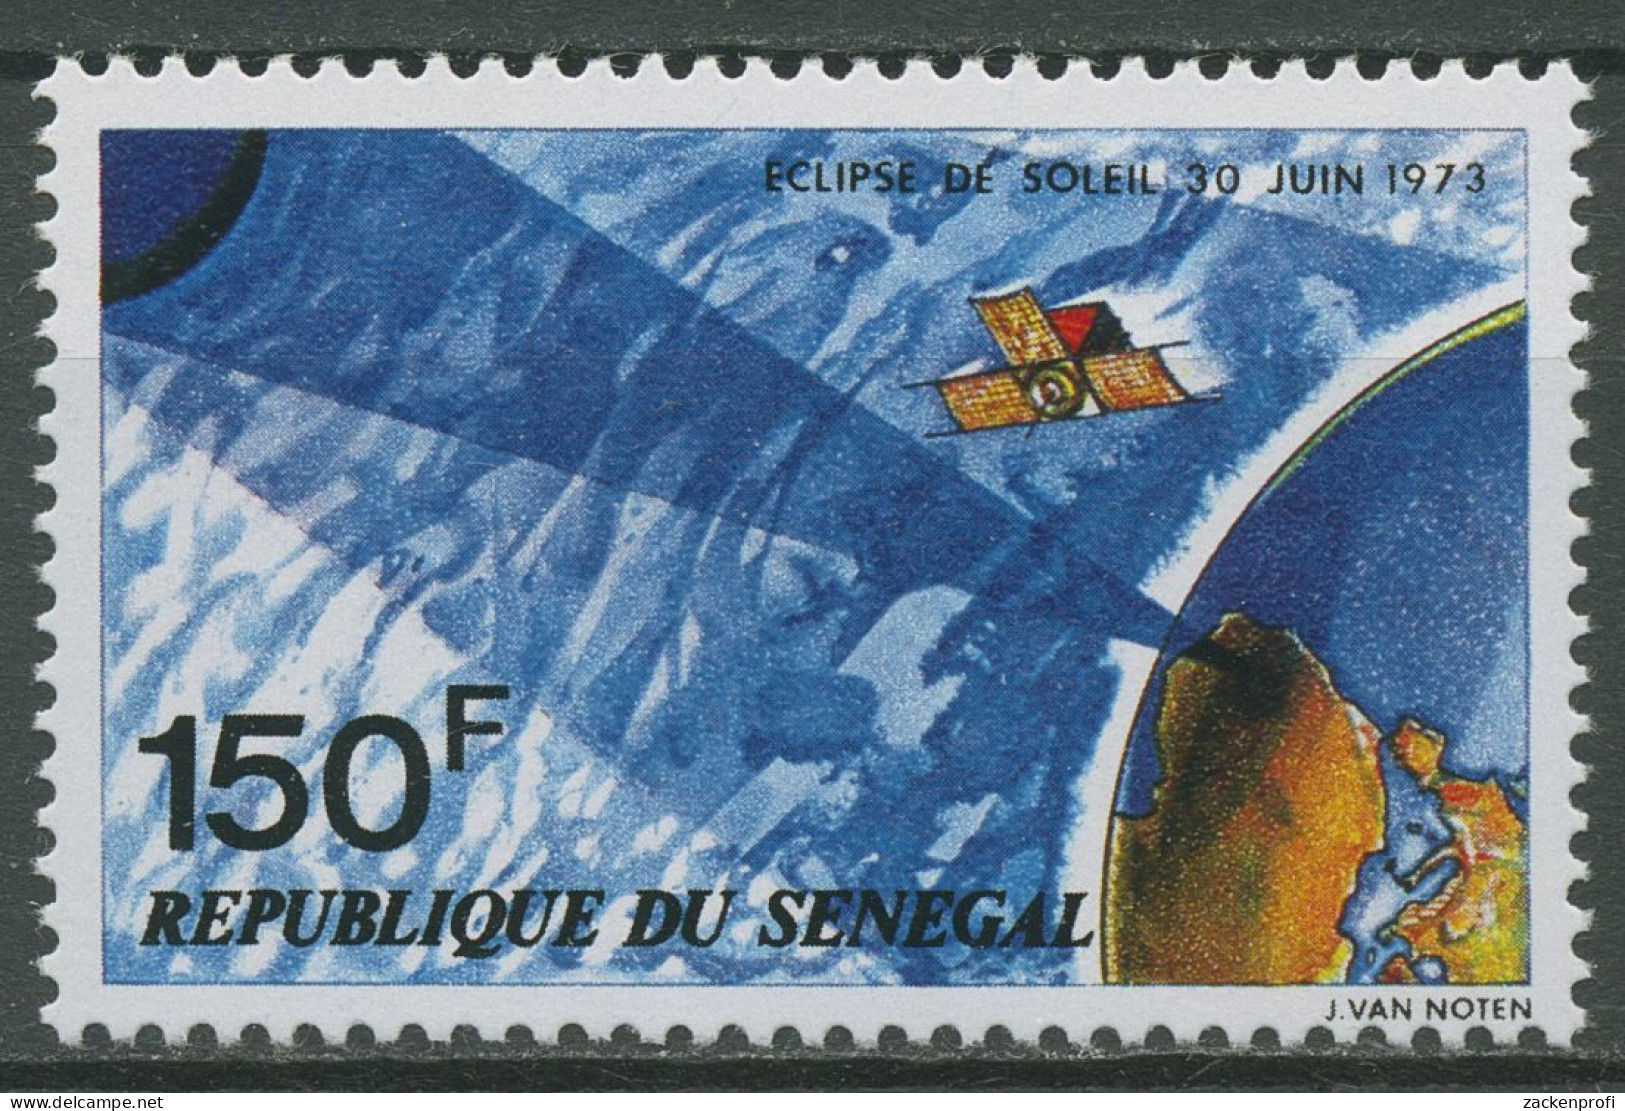 Senegal 1973 Totale Sonnenfinsternis Skylab 523 Postfrisch - Sénégal (1960-...)